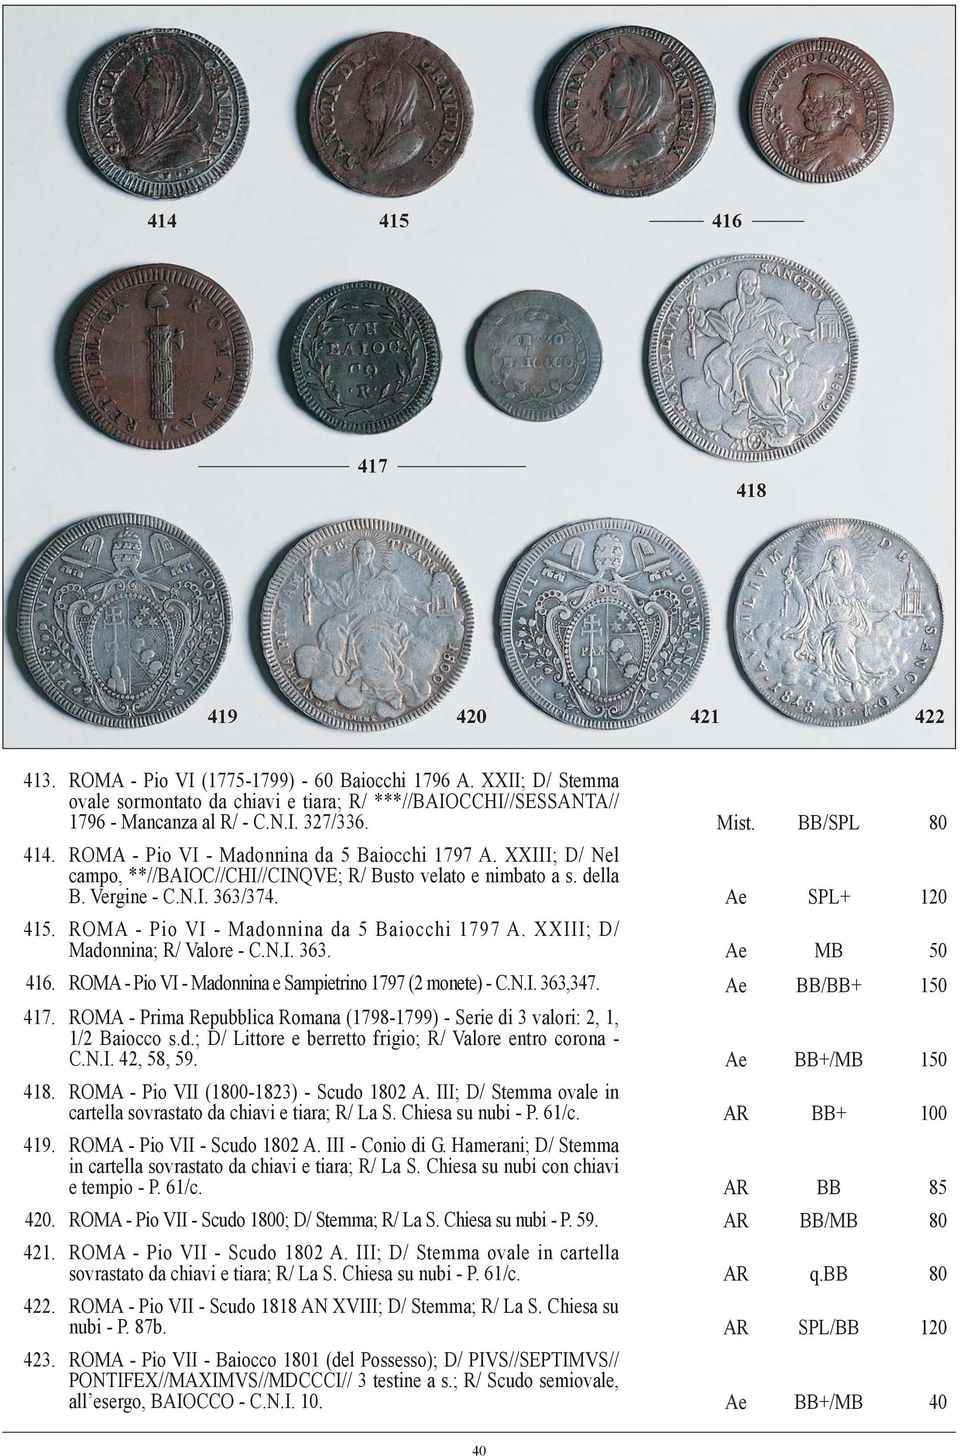 ROMA - Pio VI - Madonnina da 5 Baiocchi 1797 A. XXIII; D/ Madonnina; R/ Valore - C.N.I. 363. Ae MB 50 416. ROMA - Pio VI - Madonnina e Sampietrino 1797 (2 monete) - C.N.I. 363,347. Ae BB/BB+ 150 417.